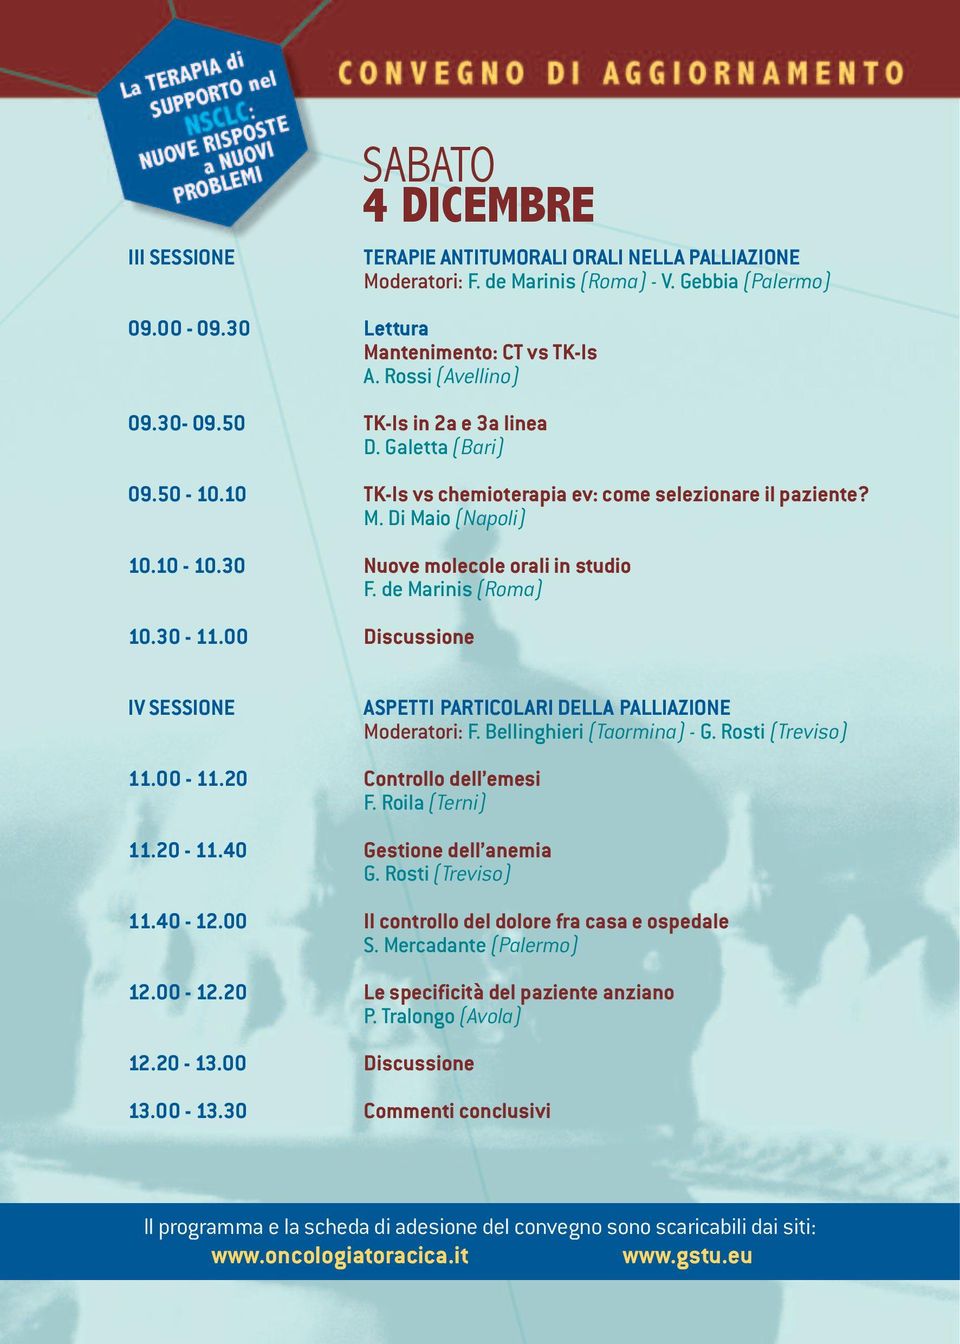 de Marinis (Roma) 10.30-11.00 Discussione IV SESSIONE ASPETTI PARTICOLARI DELLA PALLIAZIONE Moderatori: F. Bellinghieri (Taormina) - G. Rosti (Treviso) 11.00-11.20 Controllo dell emesi F.